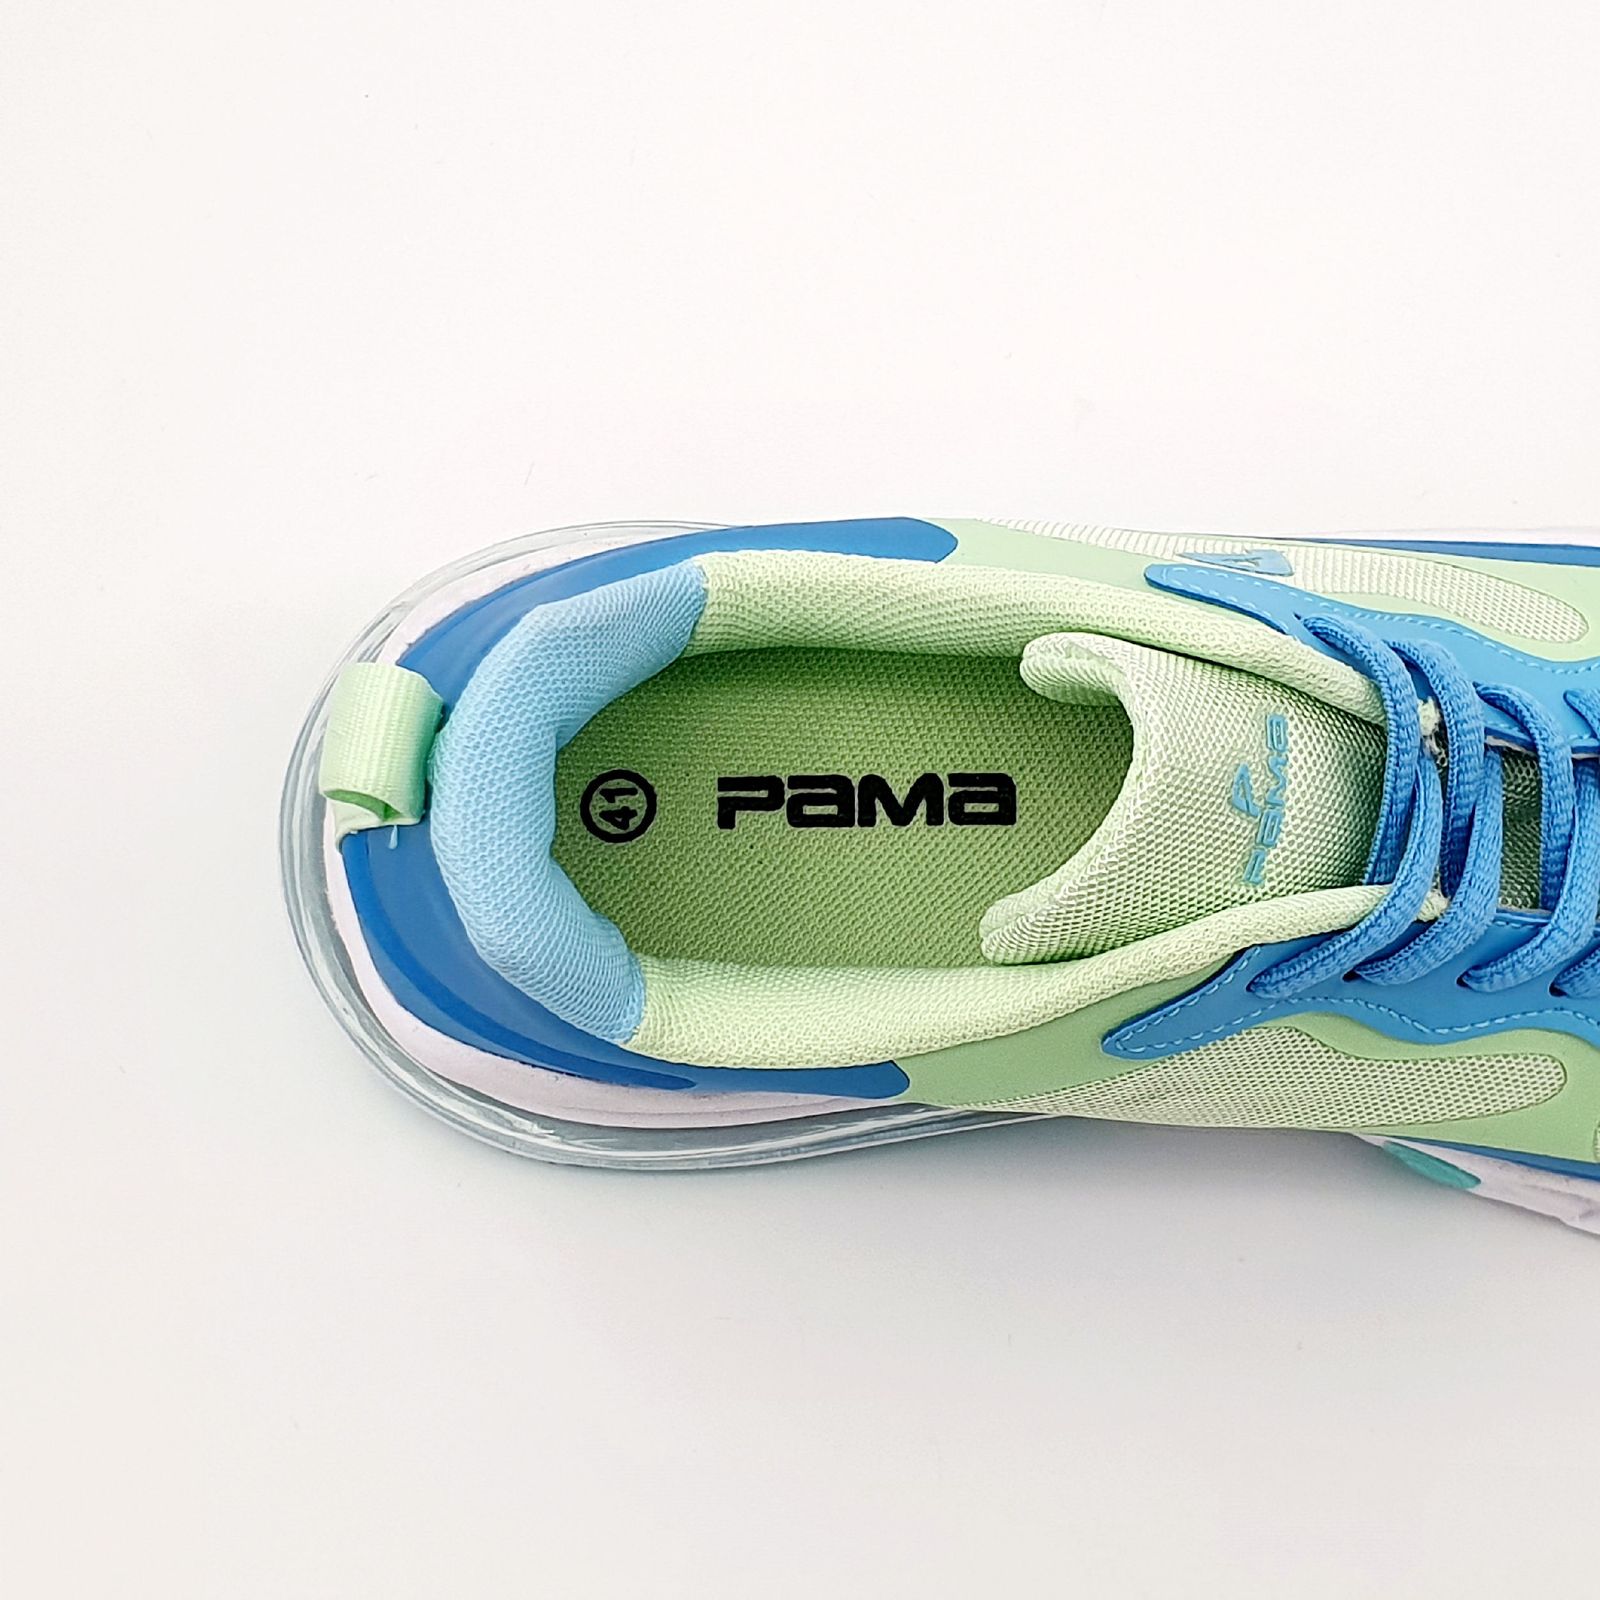 کفش پیاده روی مردانه پاما مدل VR-089 کد G1635 -  - 3